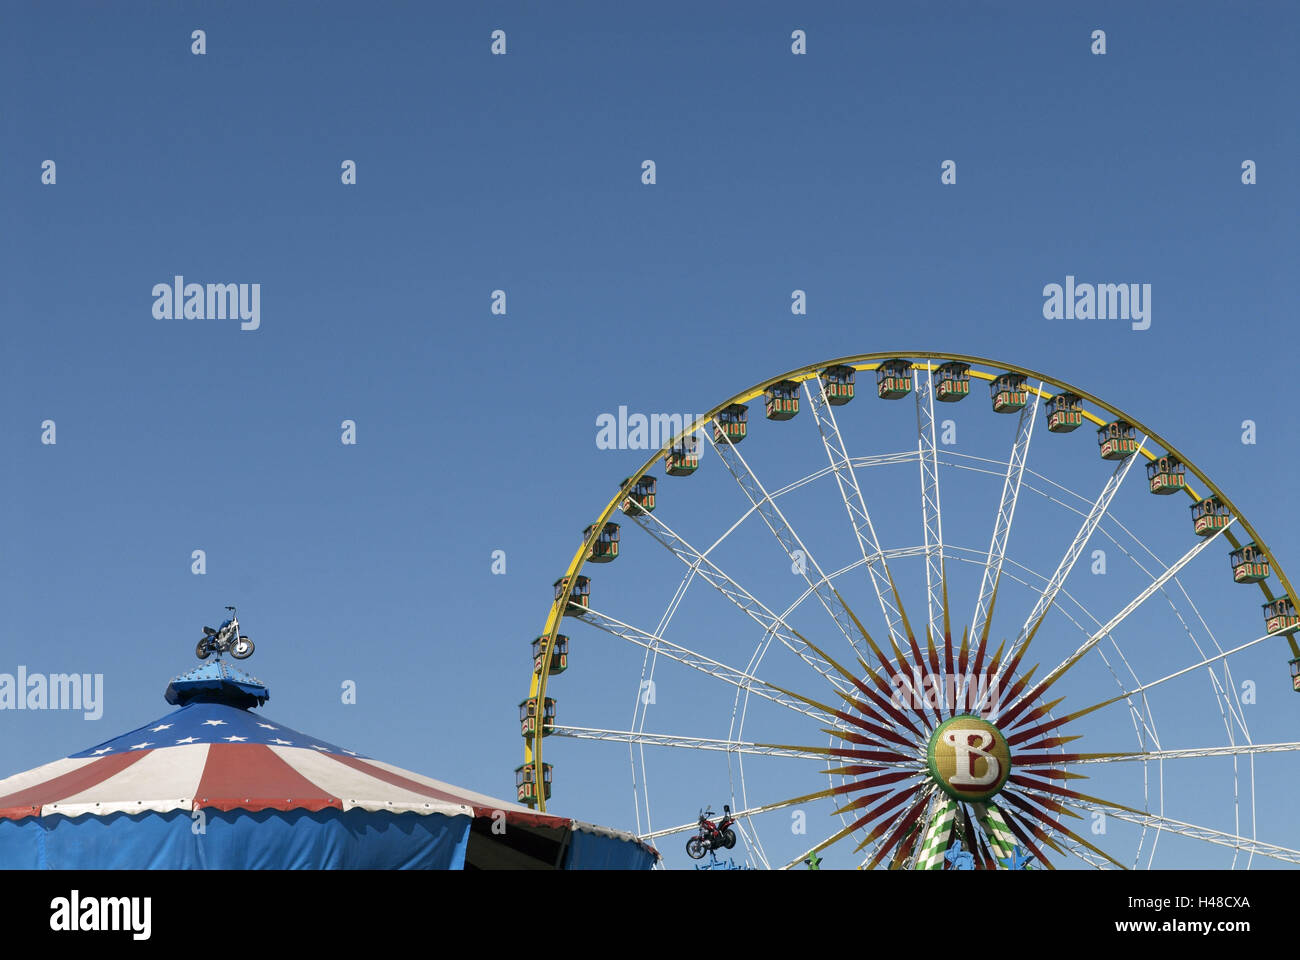 Ferris, cabine, aste metalliche, tenda, motociclo, cielo blu, Foto Stock